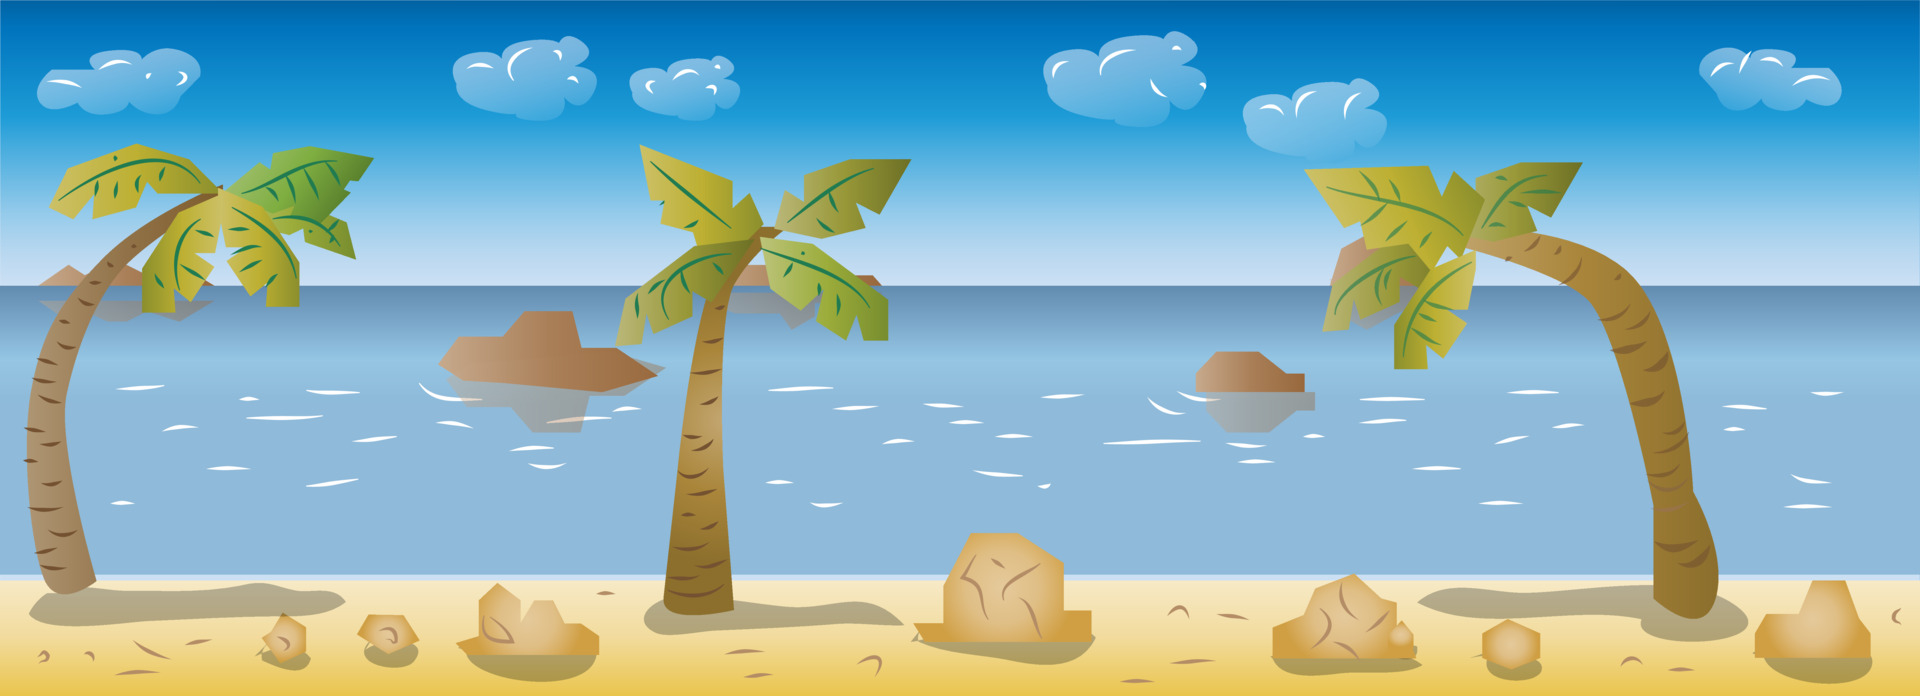 Hình nền game bãi biển 2D: Hòa mình vào không gian yên bình của bãi biển với các hình nền game bãi biển 2D tuyệt đẹp. Tận hưởng ánh nắng mặt trời trên đại dương, đồng thời giữ cho điện thoại của bạn cập nhật với các hình nền đầy màu sắc này.